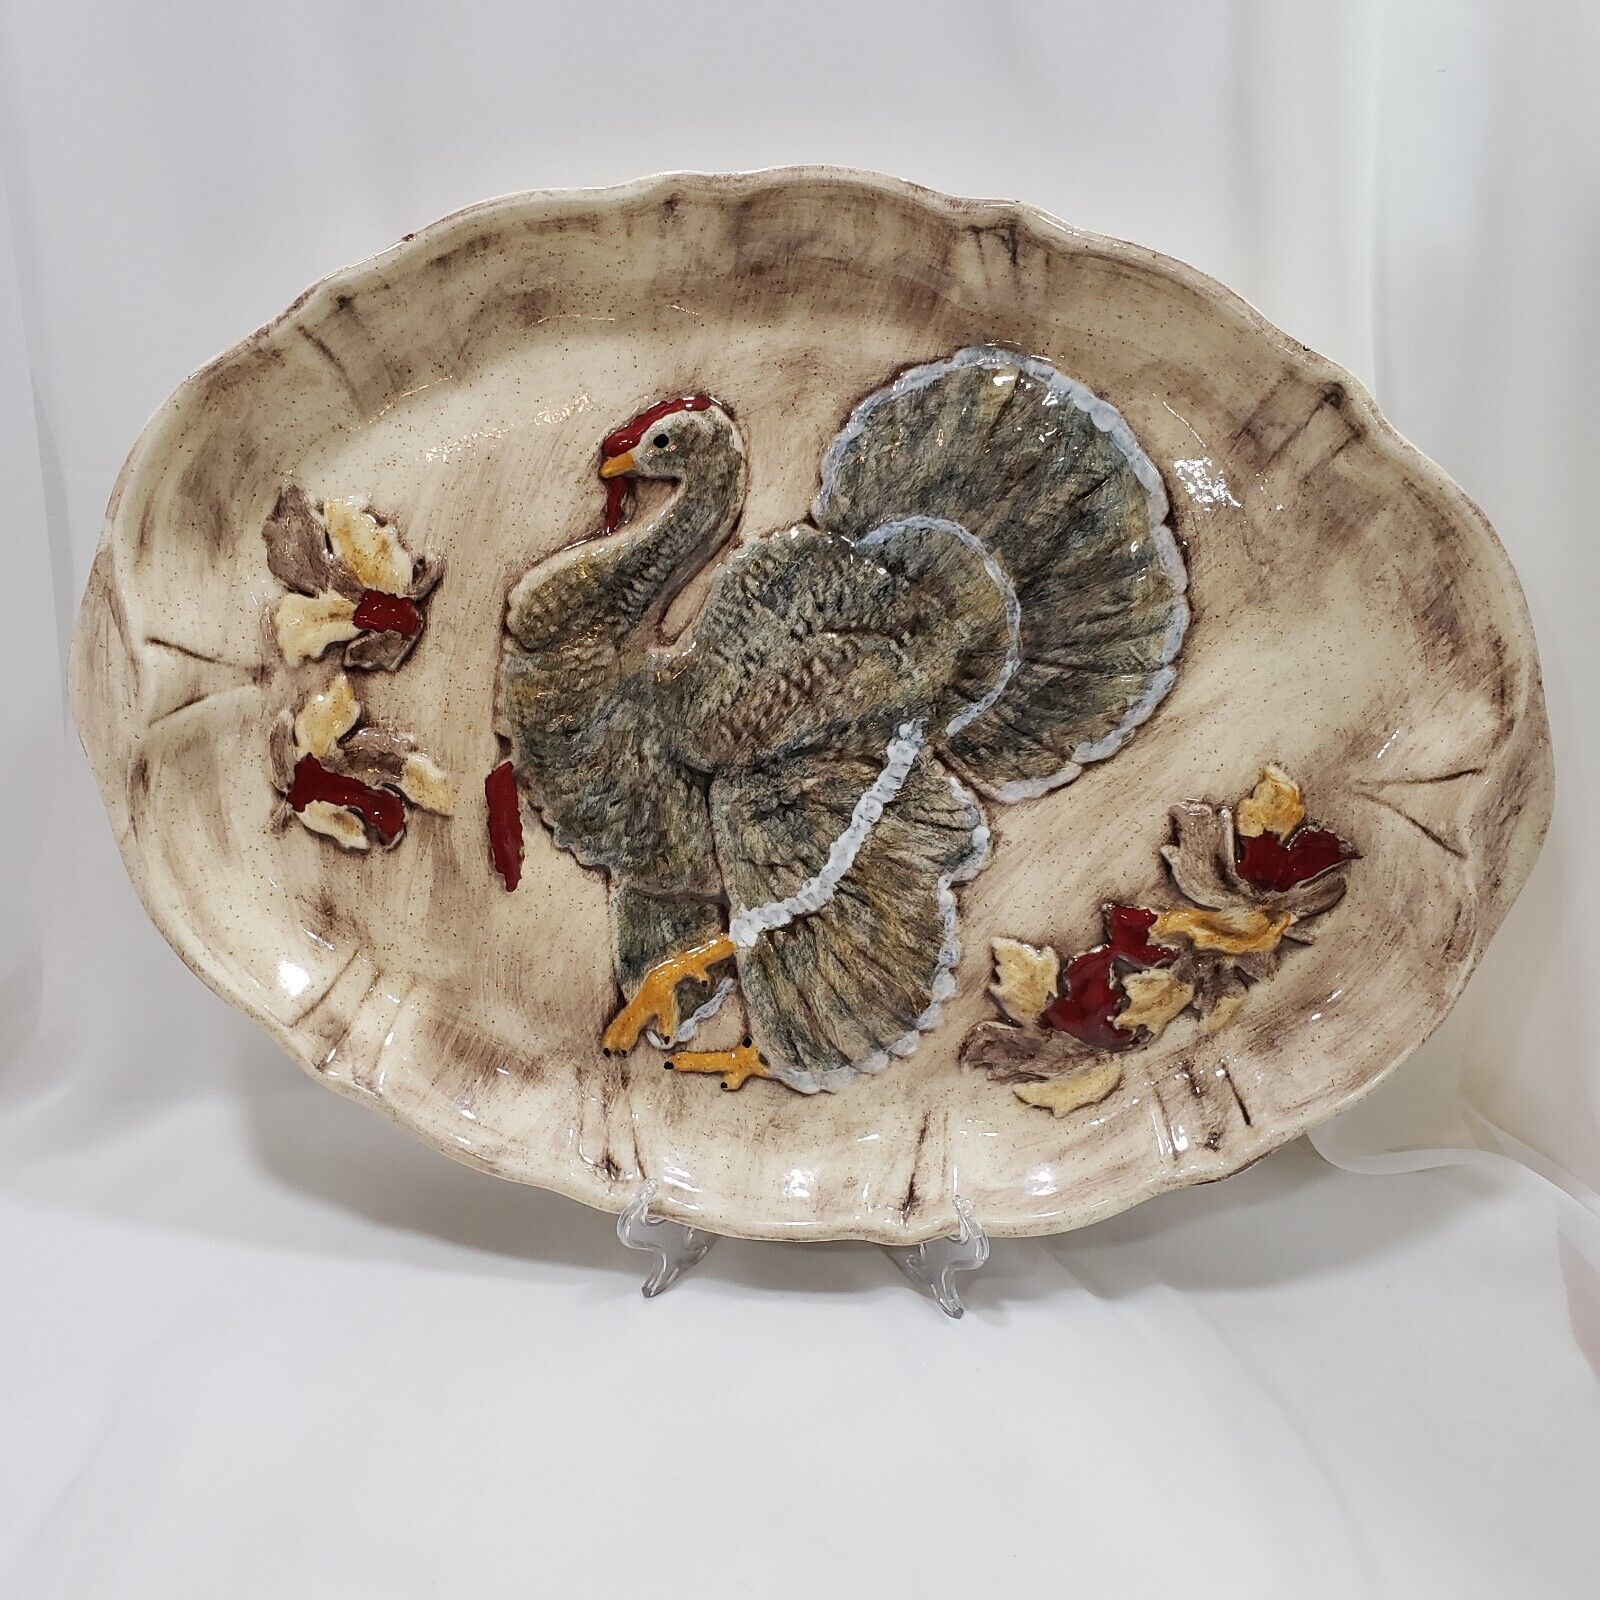 Thanksgiving Turkey Platter Multicolor Ceramic Oval 19.25x14.5